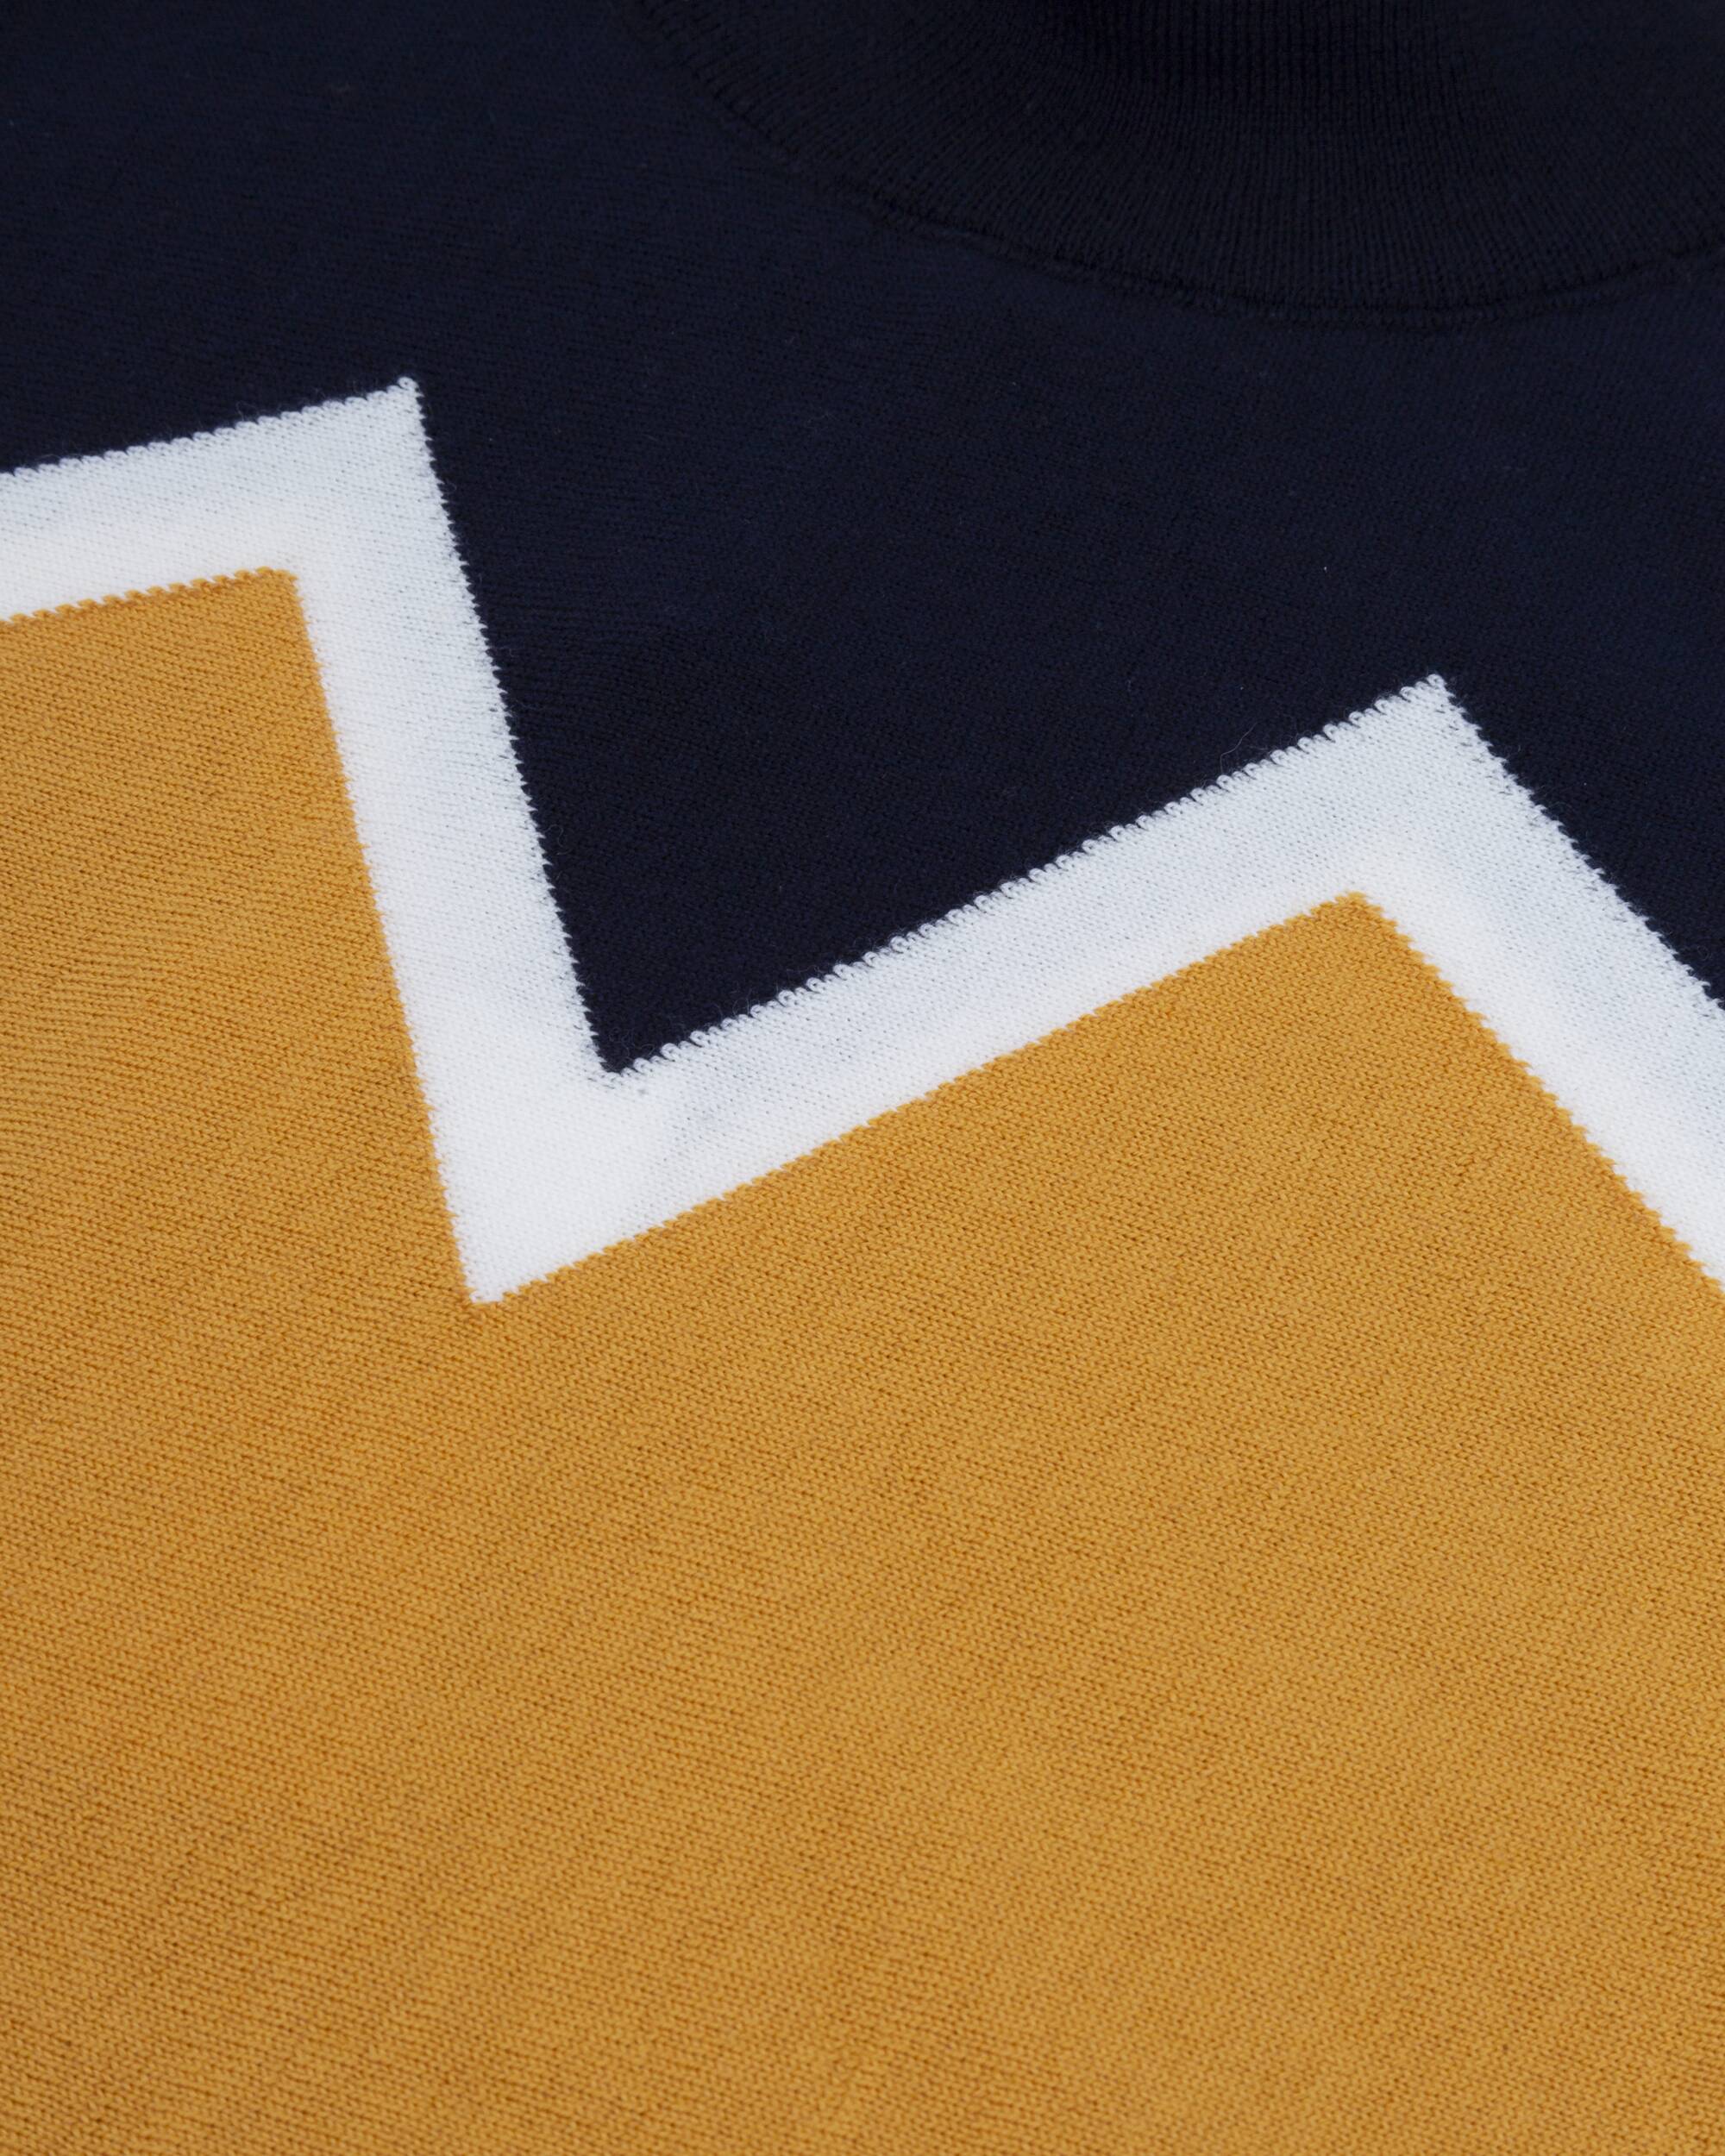 Sweater "Winter Peak Navy Neck" in orange and blue made from 100% organic merino wool from Brava Fabrics